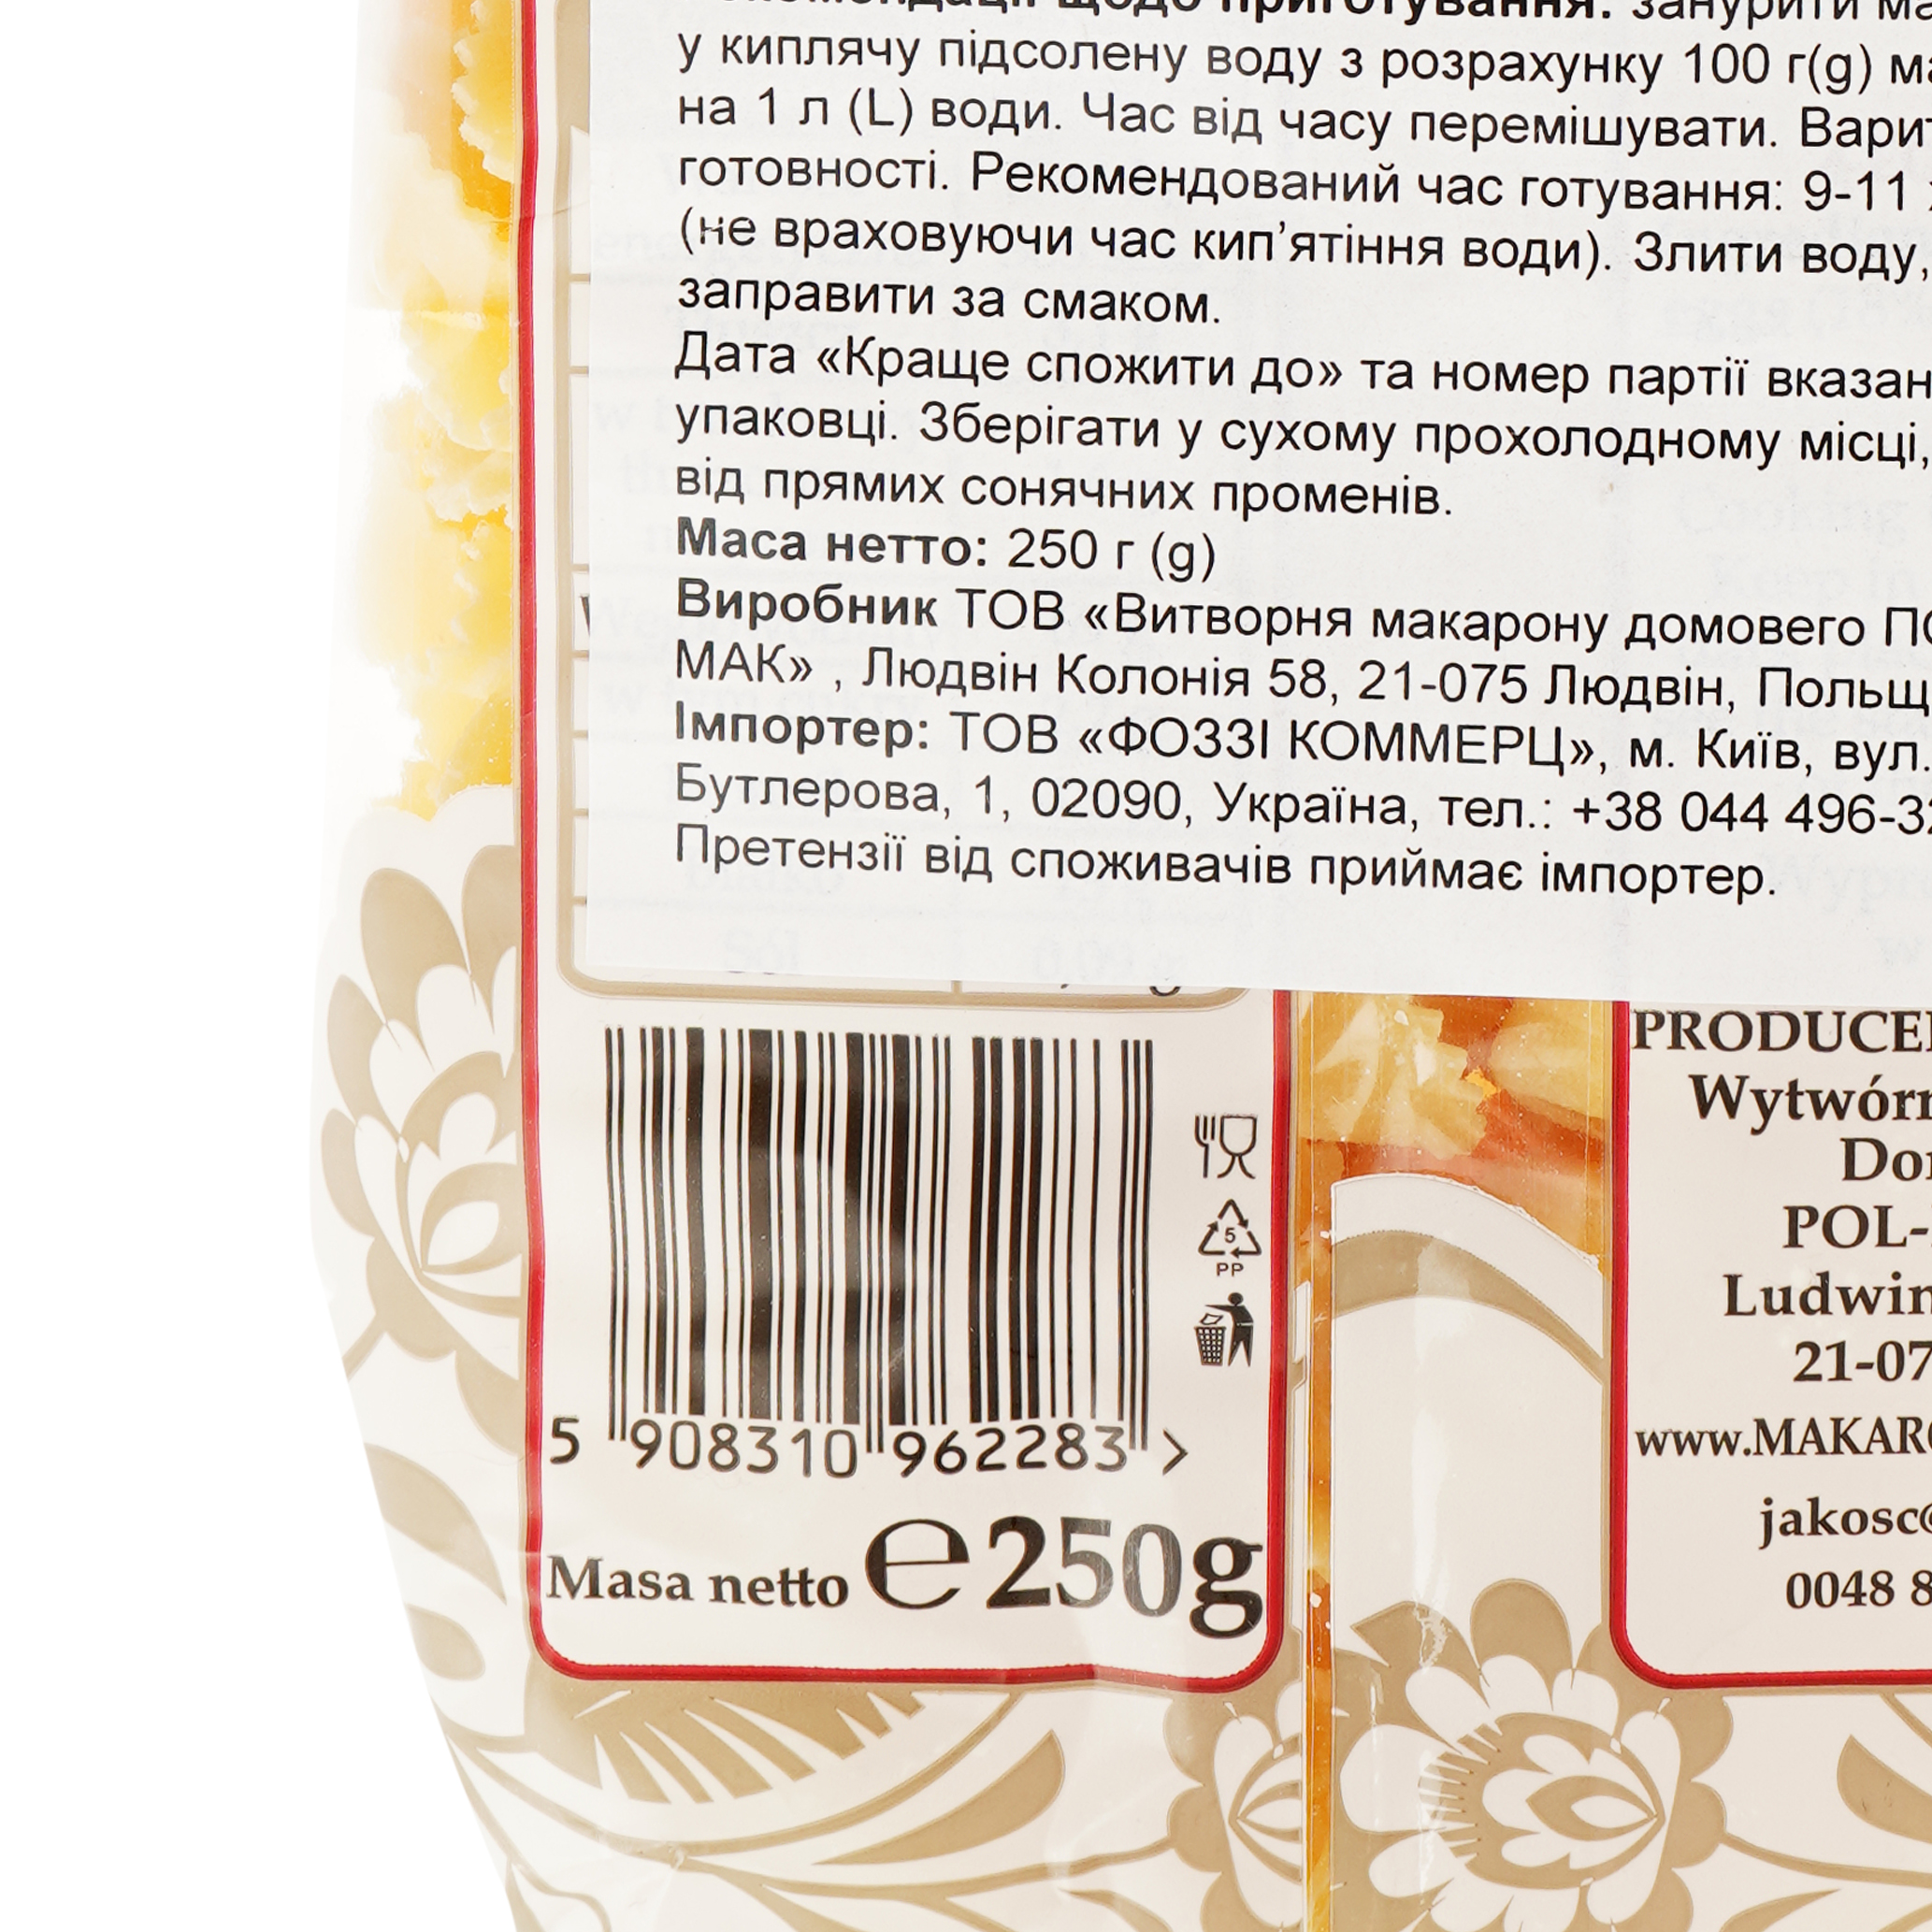 Макаронные изделия Polmak Uszka фигурные яичные, 250 г (920052) - фото 5